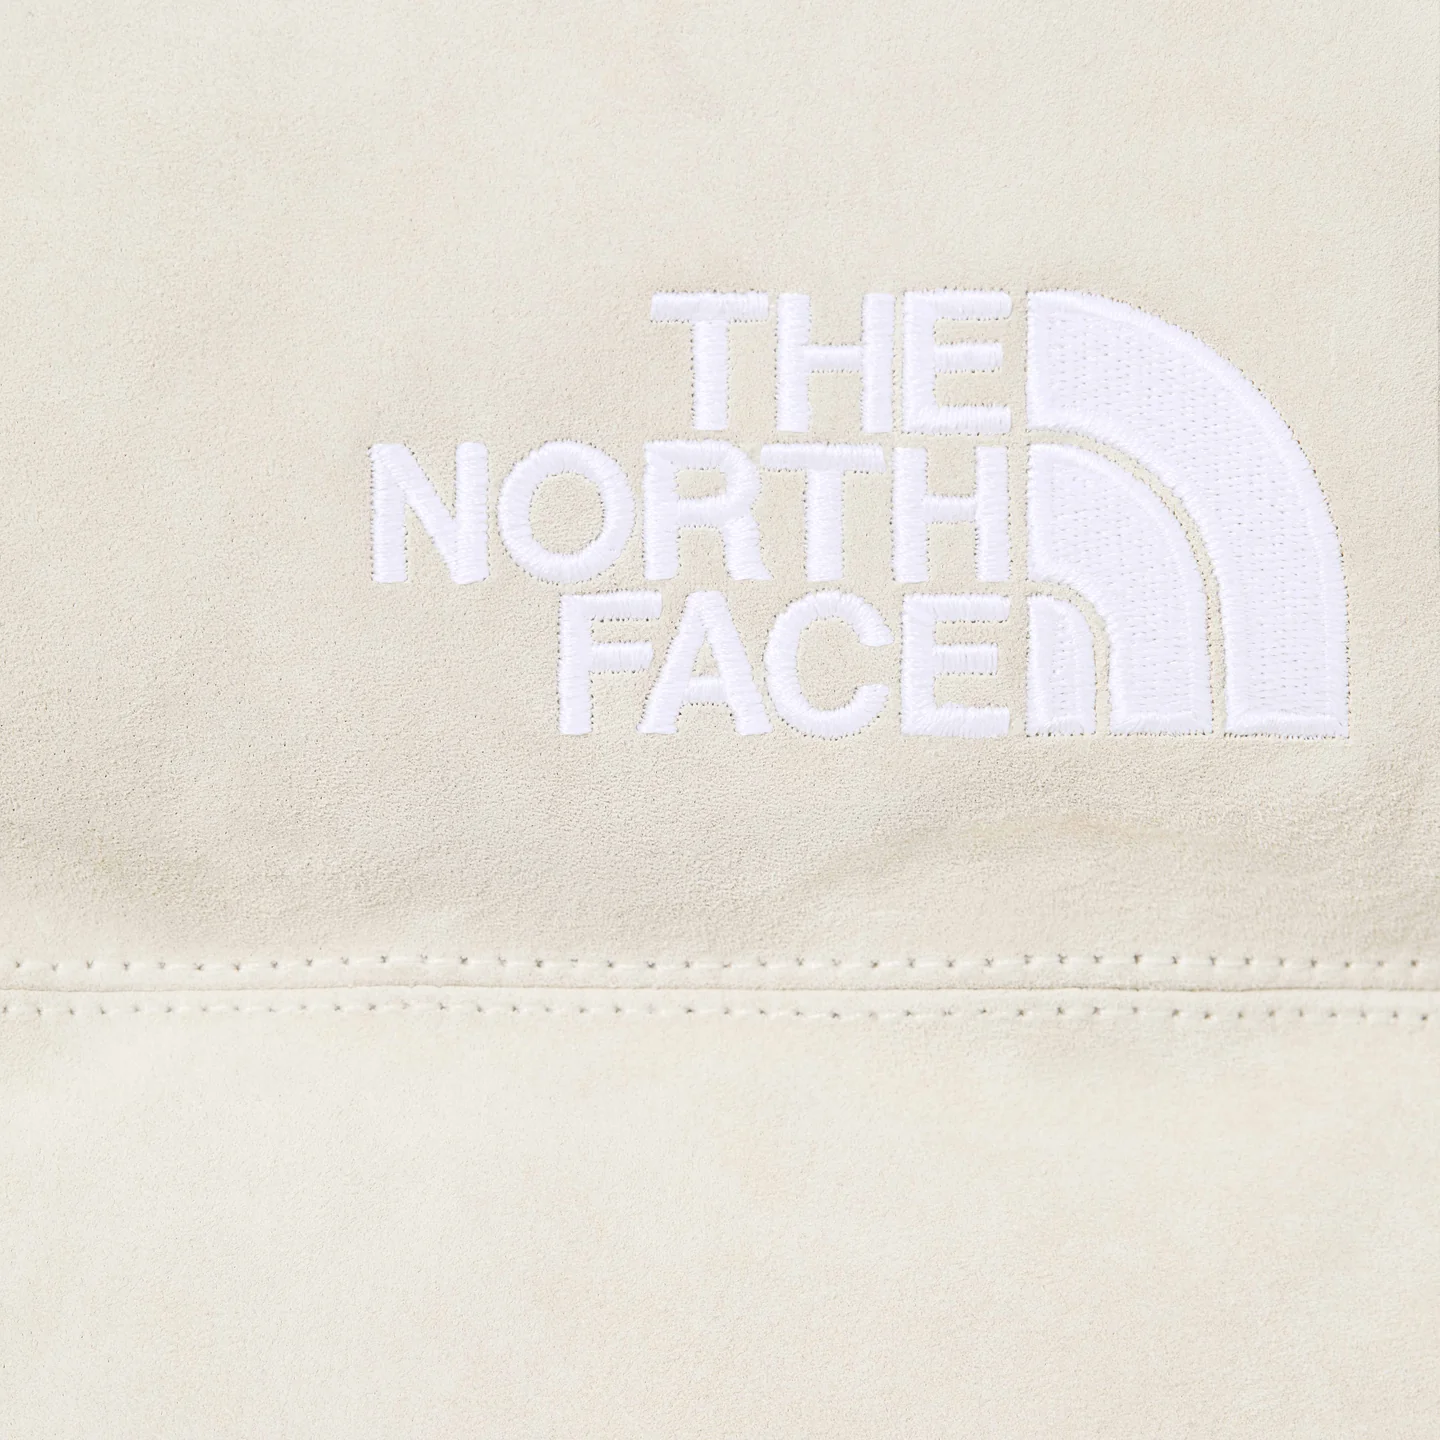 Supreme®/The North Face® Suede Nuptse Jacket